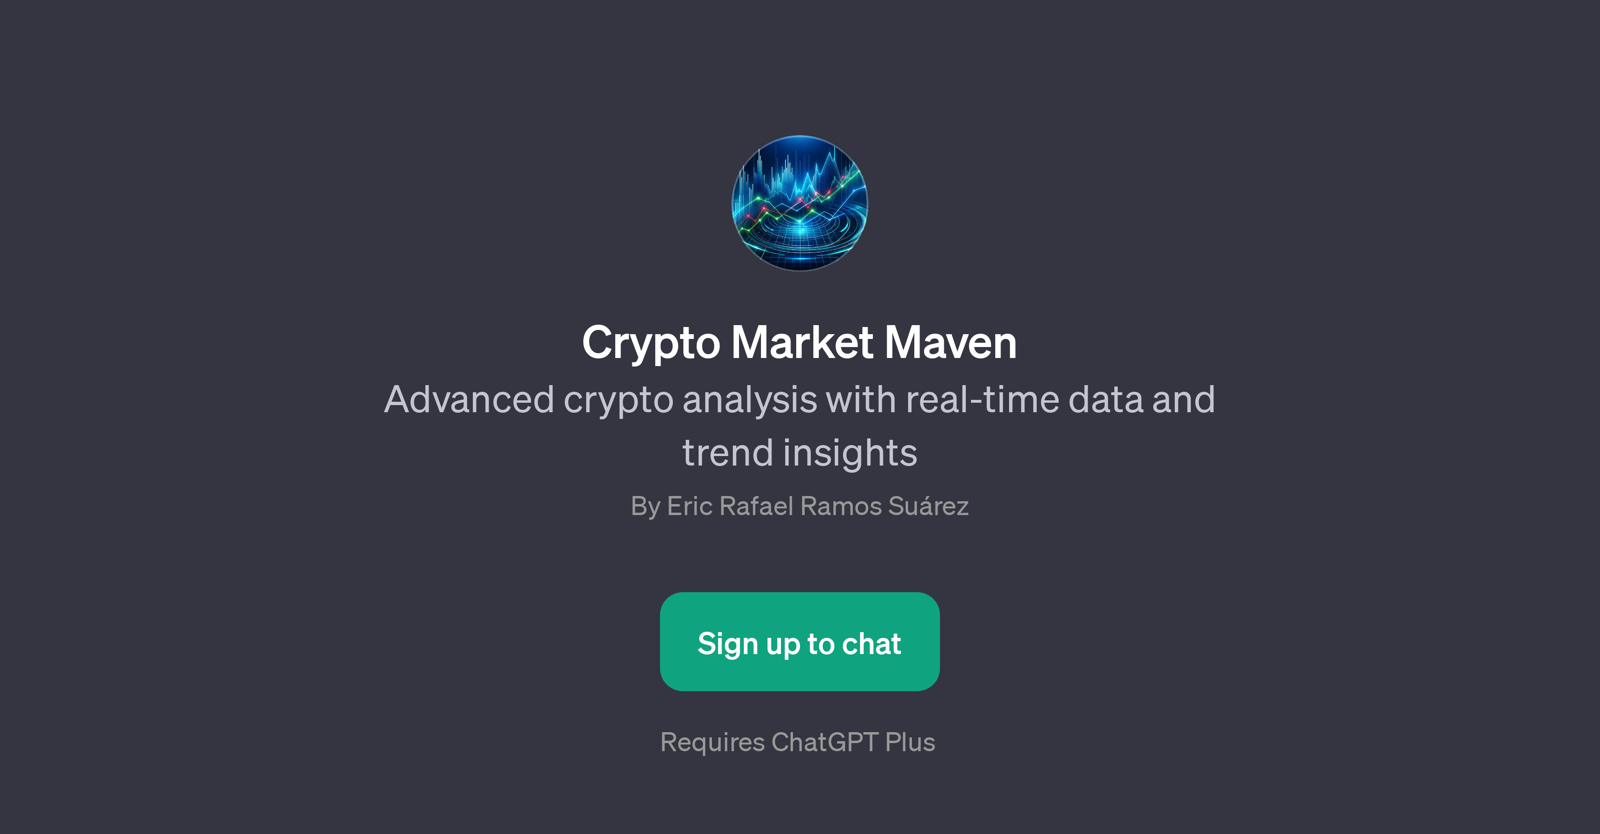 Crypto Market Maven website